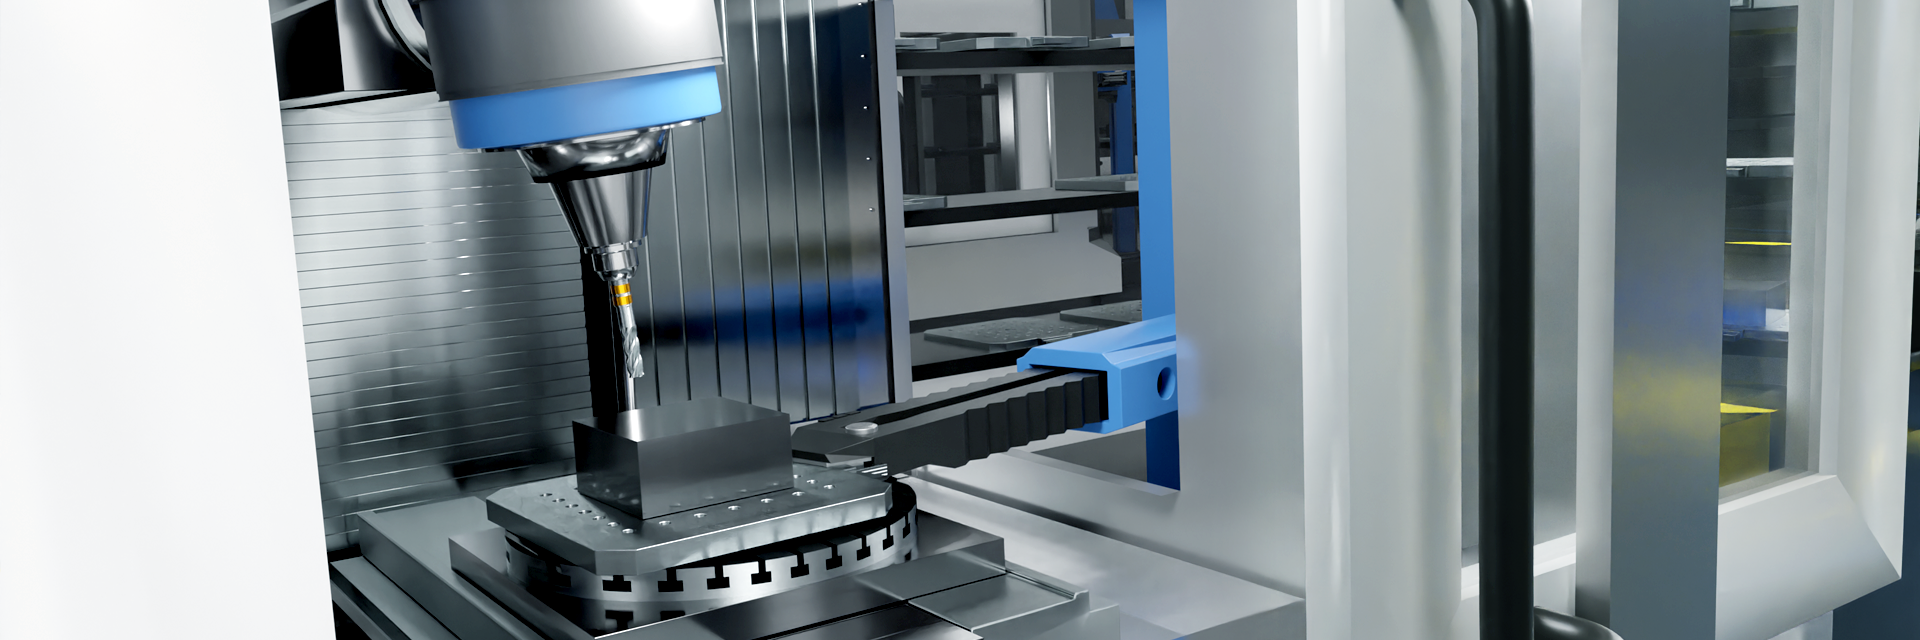 CNC-Steuerungen  Automatisierung von Werkzeugmaschinen